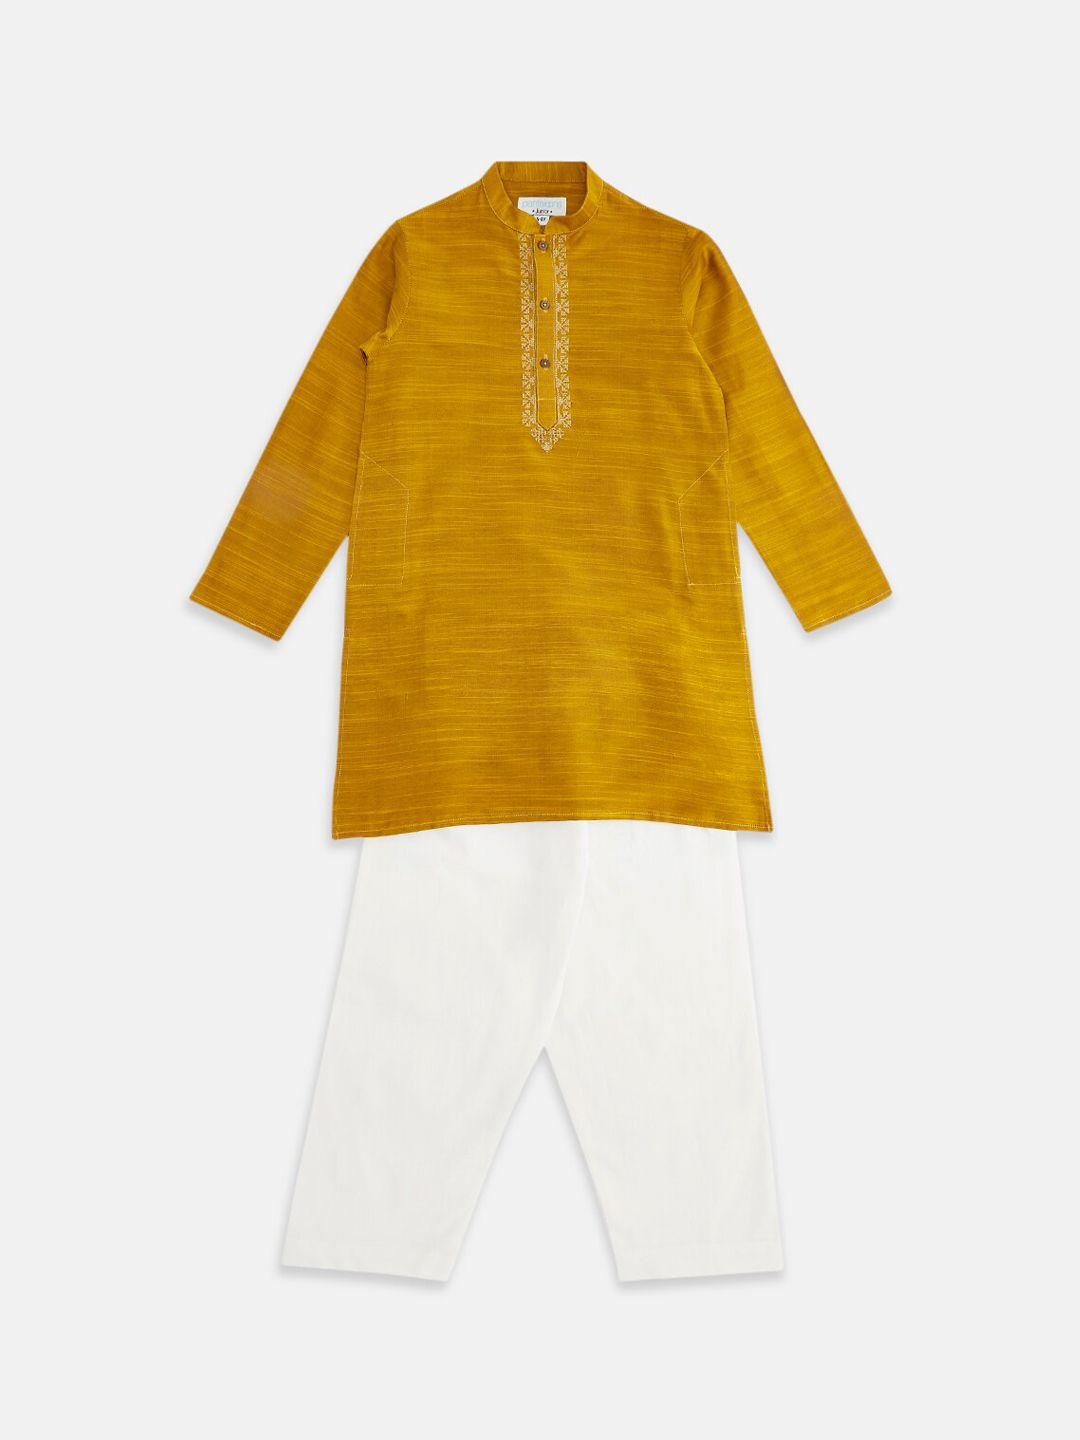 indus route by pantaloons boys mustard yellow kurta with pyjamas